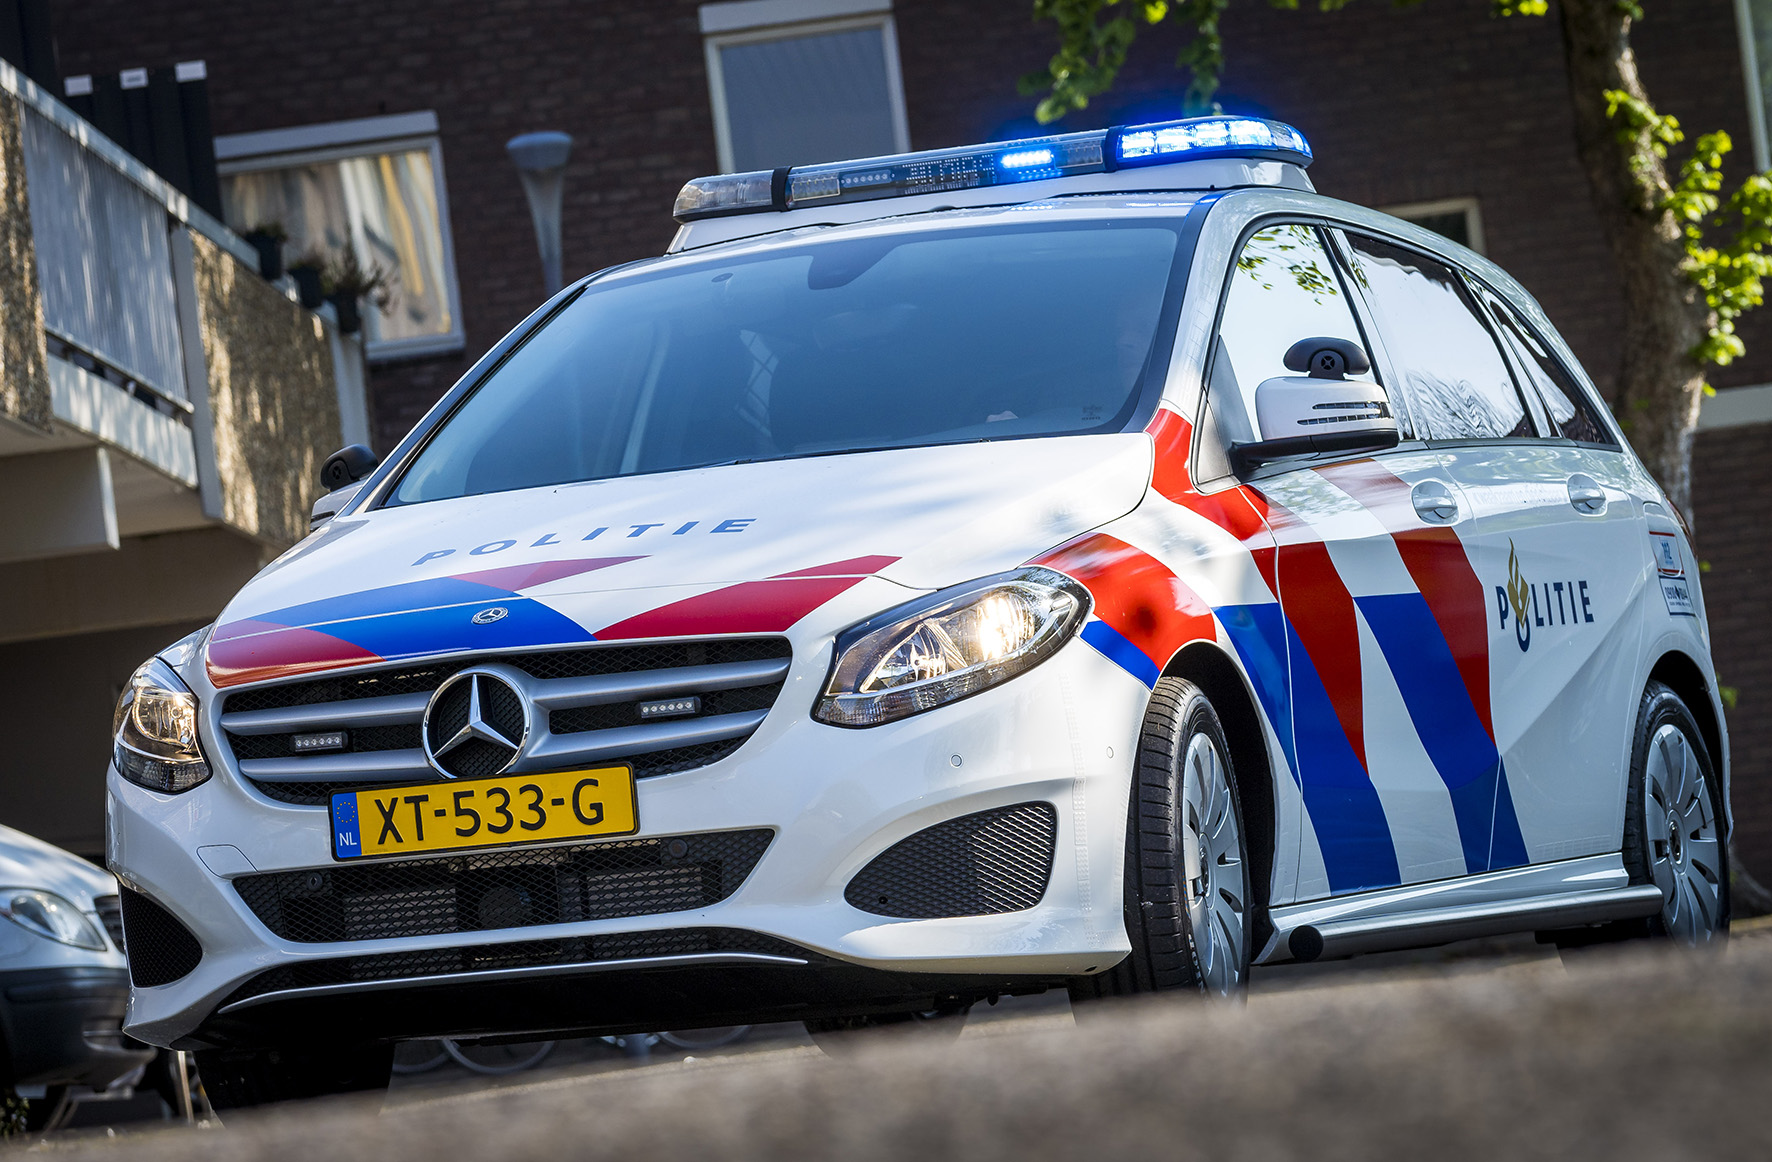 Politie naar de Vondelingenweg in Pernis Rotterdam vanwege ongeval met letsel